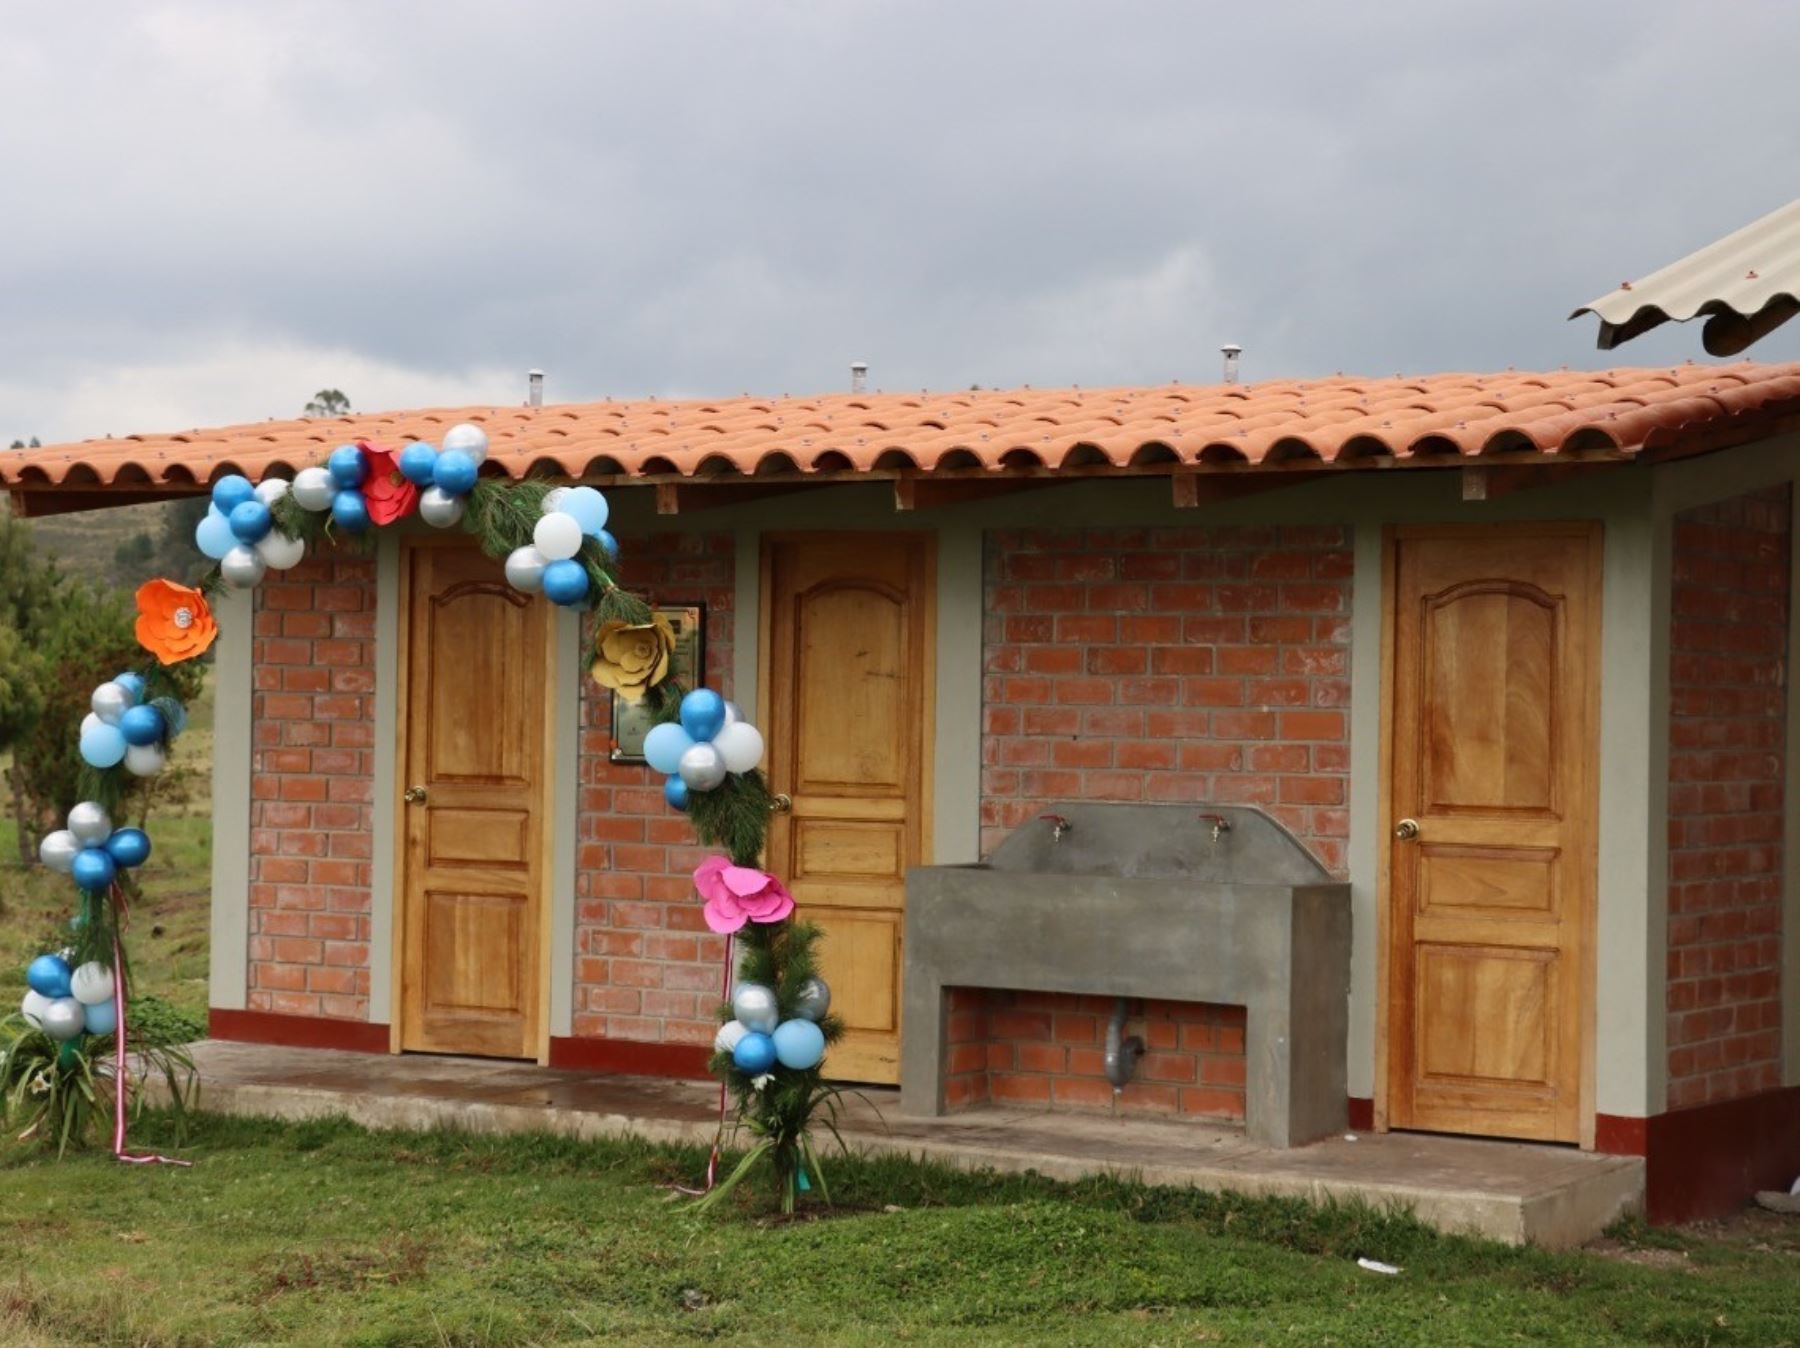 El Ministerio de Vivienda inauguró una obra de agua y saneamiento rural en el distrito de Llapa, región Amazonas, que beneficia a más de 200 pobladores. ANDINA/Difusión